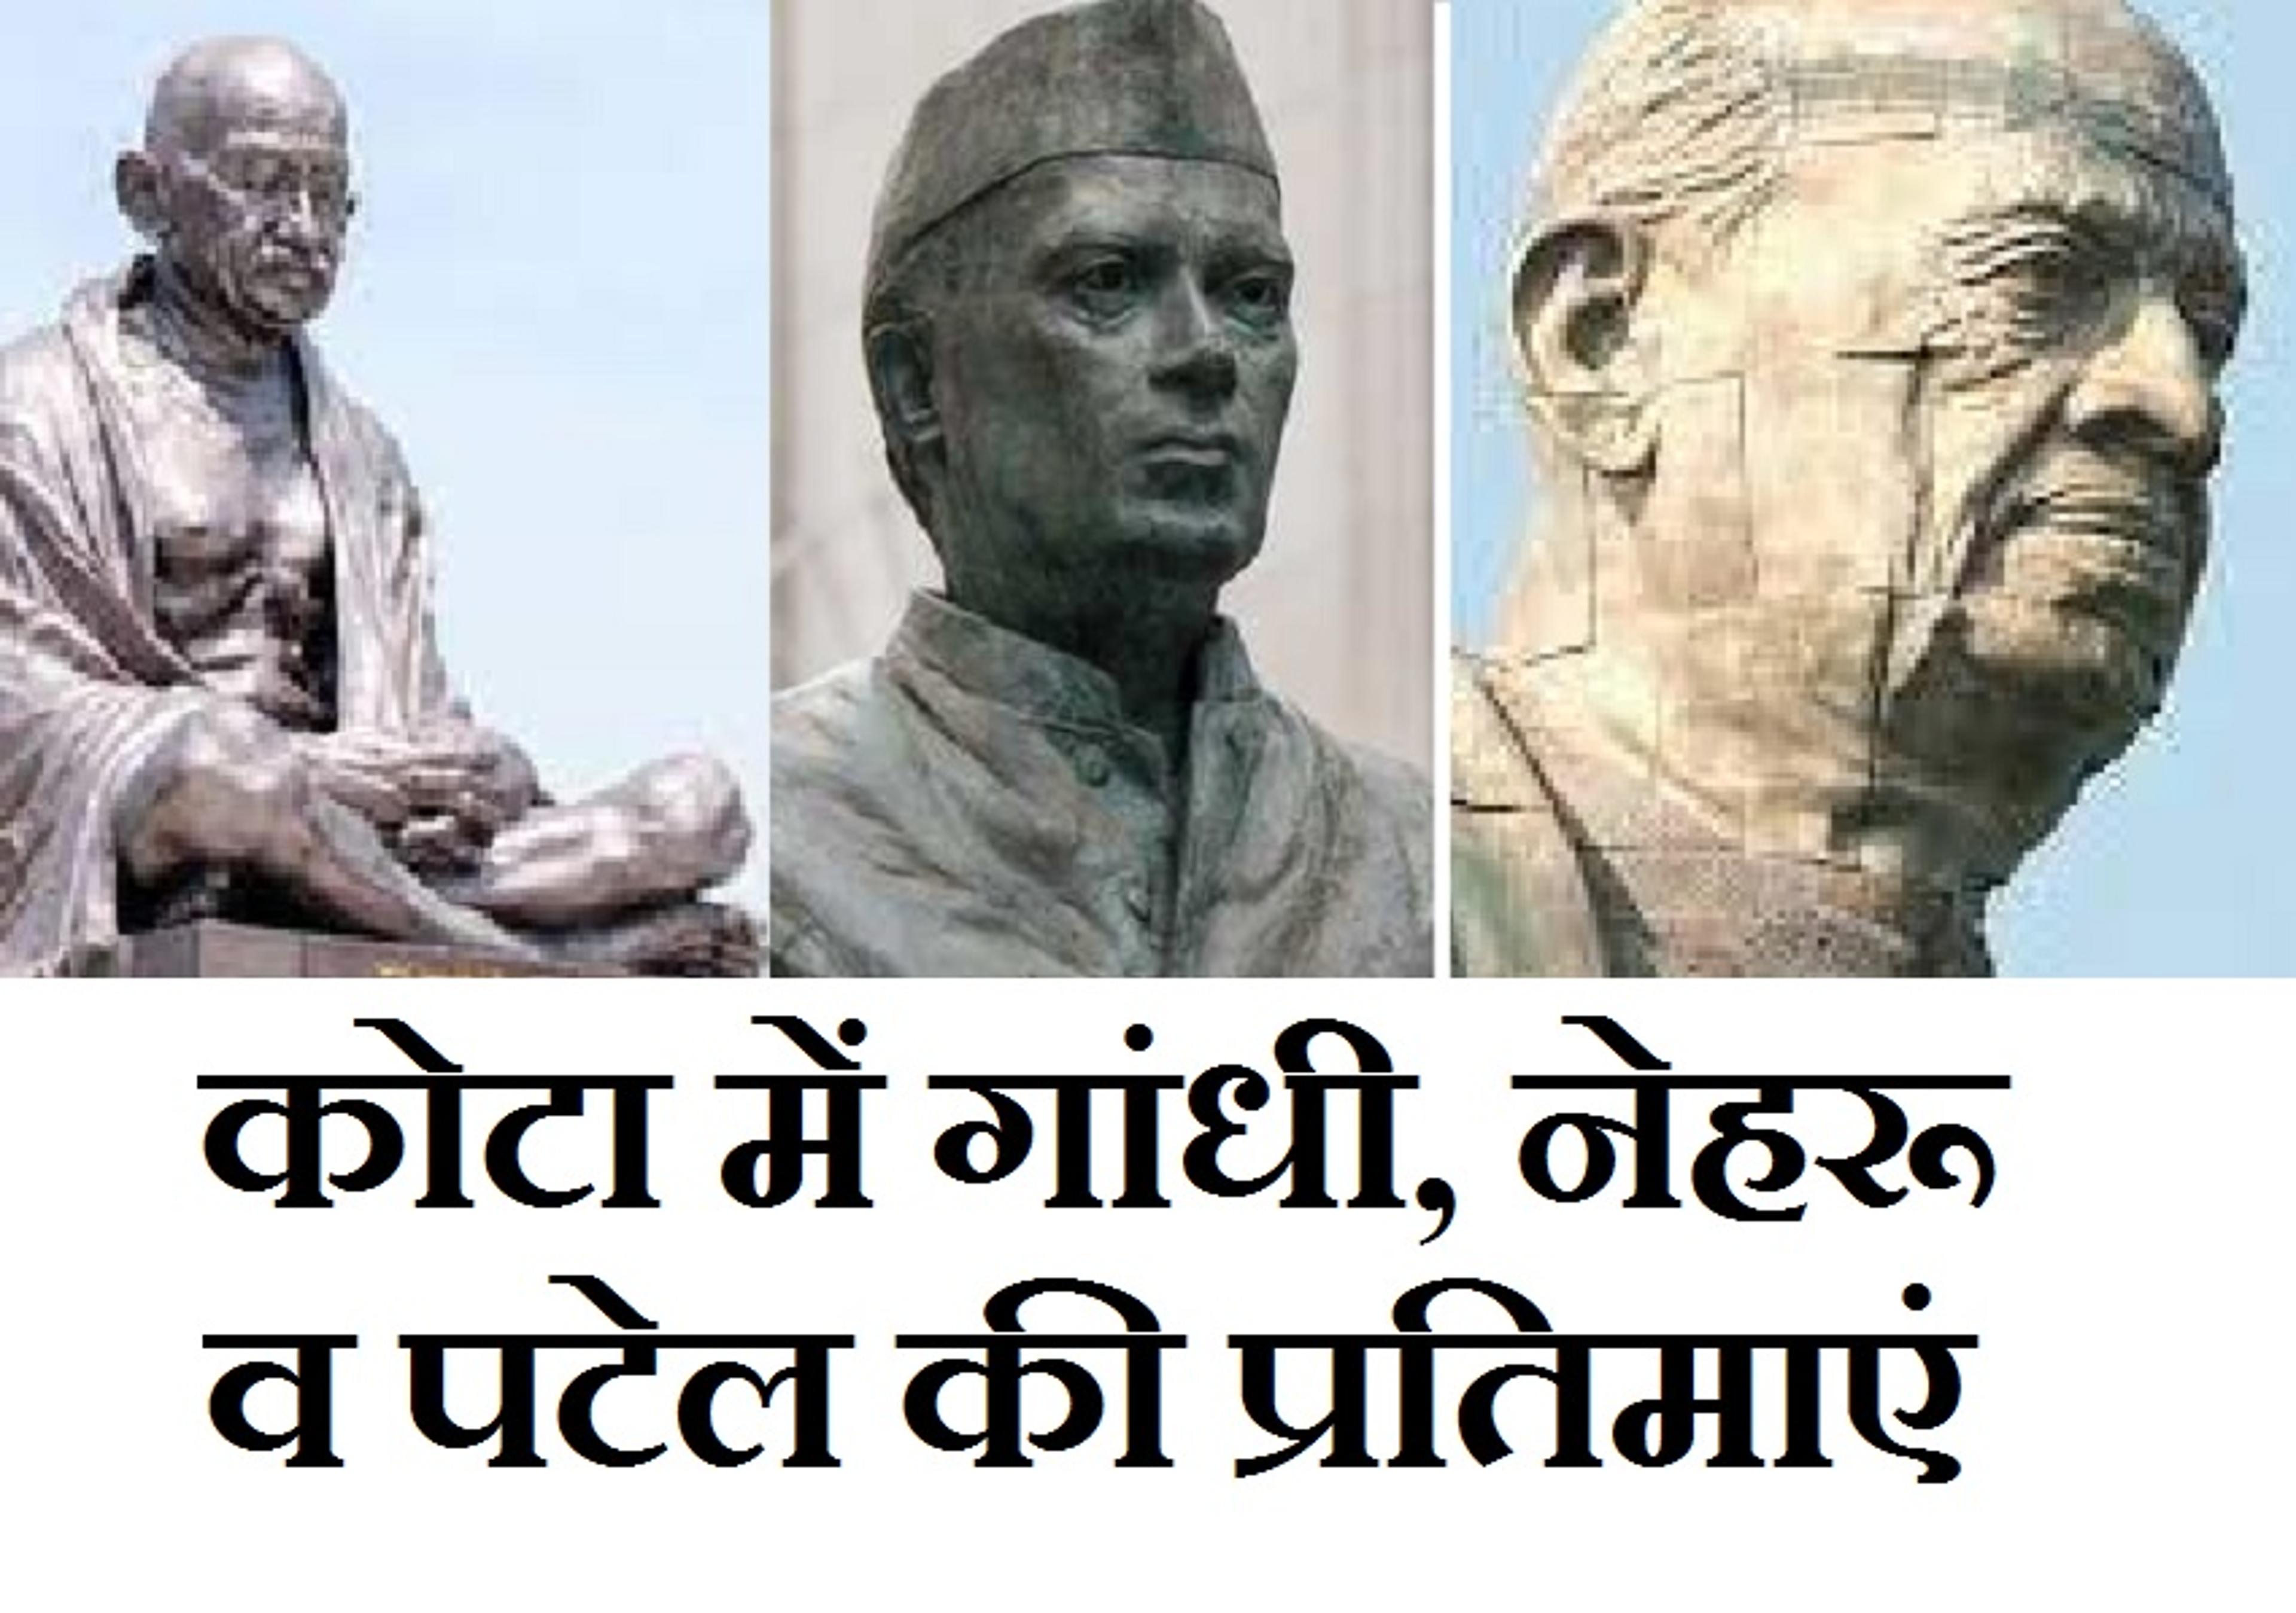 Statue of Unity के बाद अब कोटा में लगेगी सरदार पटेल की विशाल प्रतिमा, महात्मा गांधी, जवाहर लाल नेहरू भी साथ होंगे, देखें वीडियो